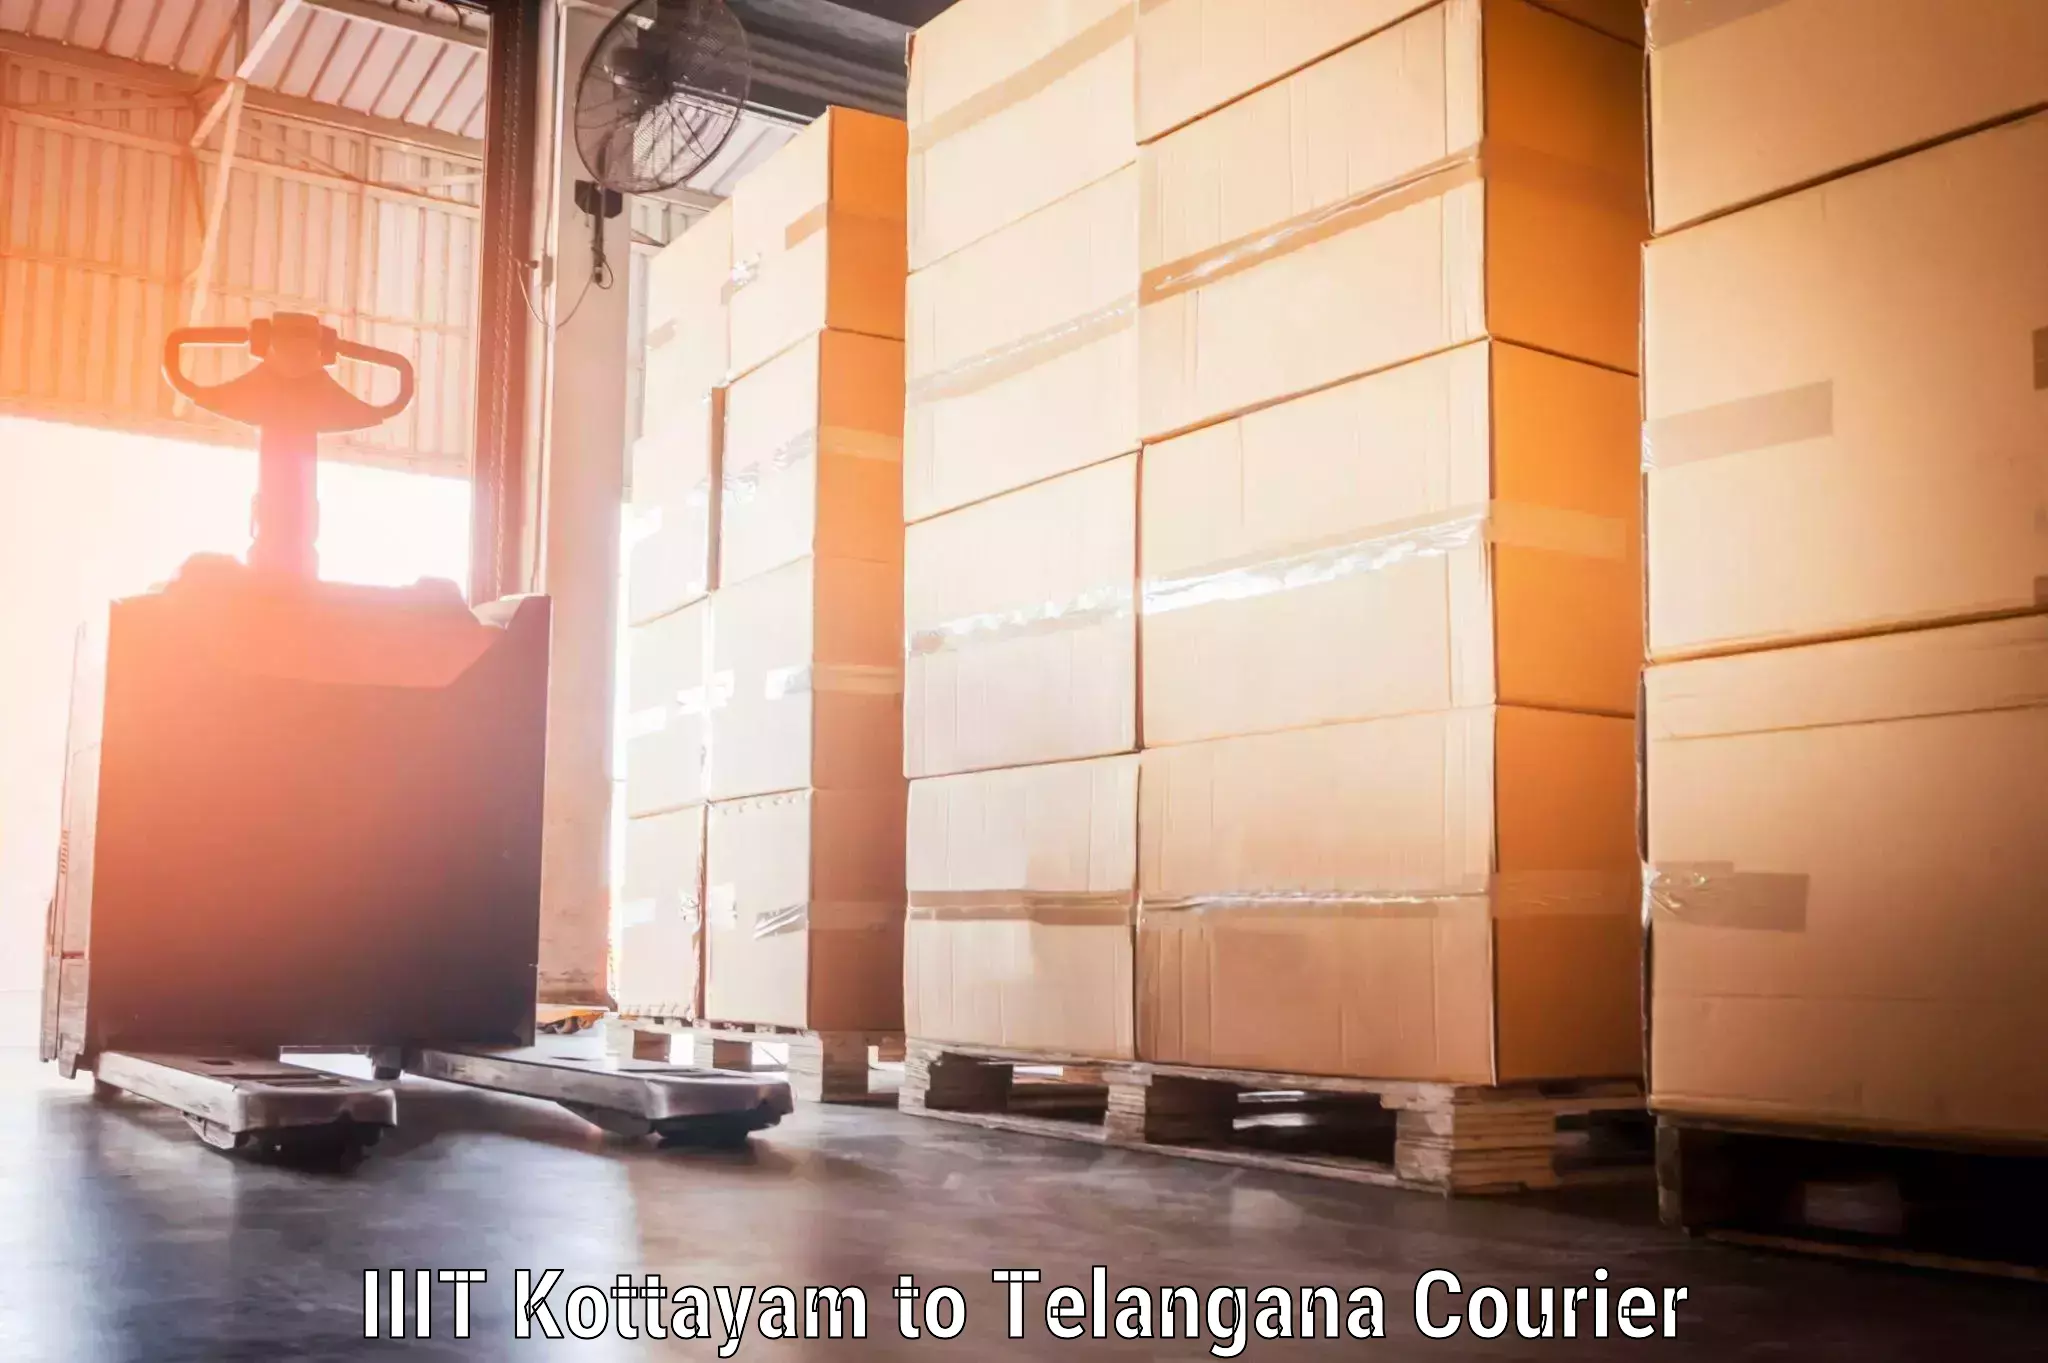 Door-to-door baggage service IIIT Kottayam to Telangana